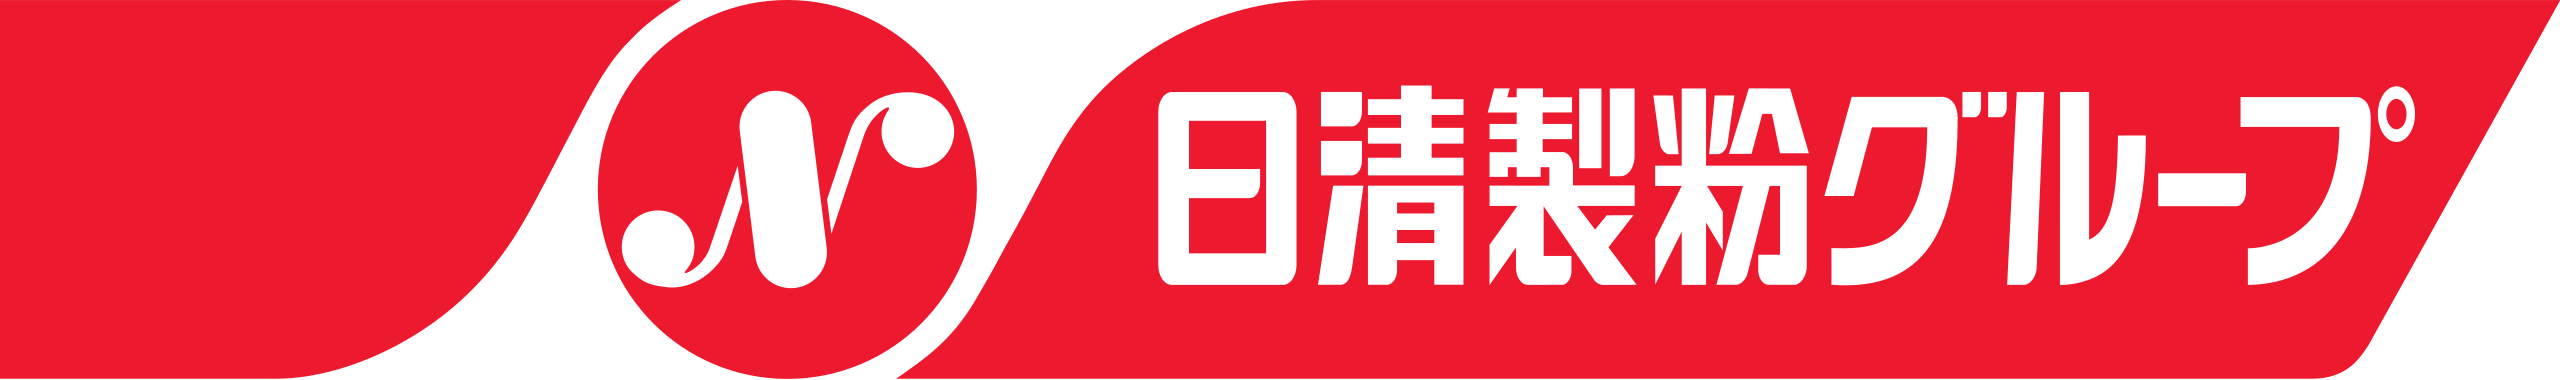 Nisshin Seifun Brand Logo